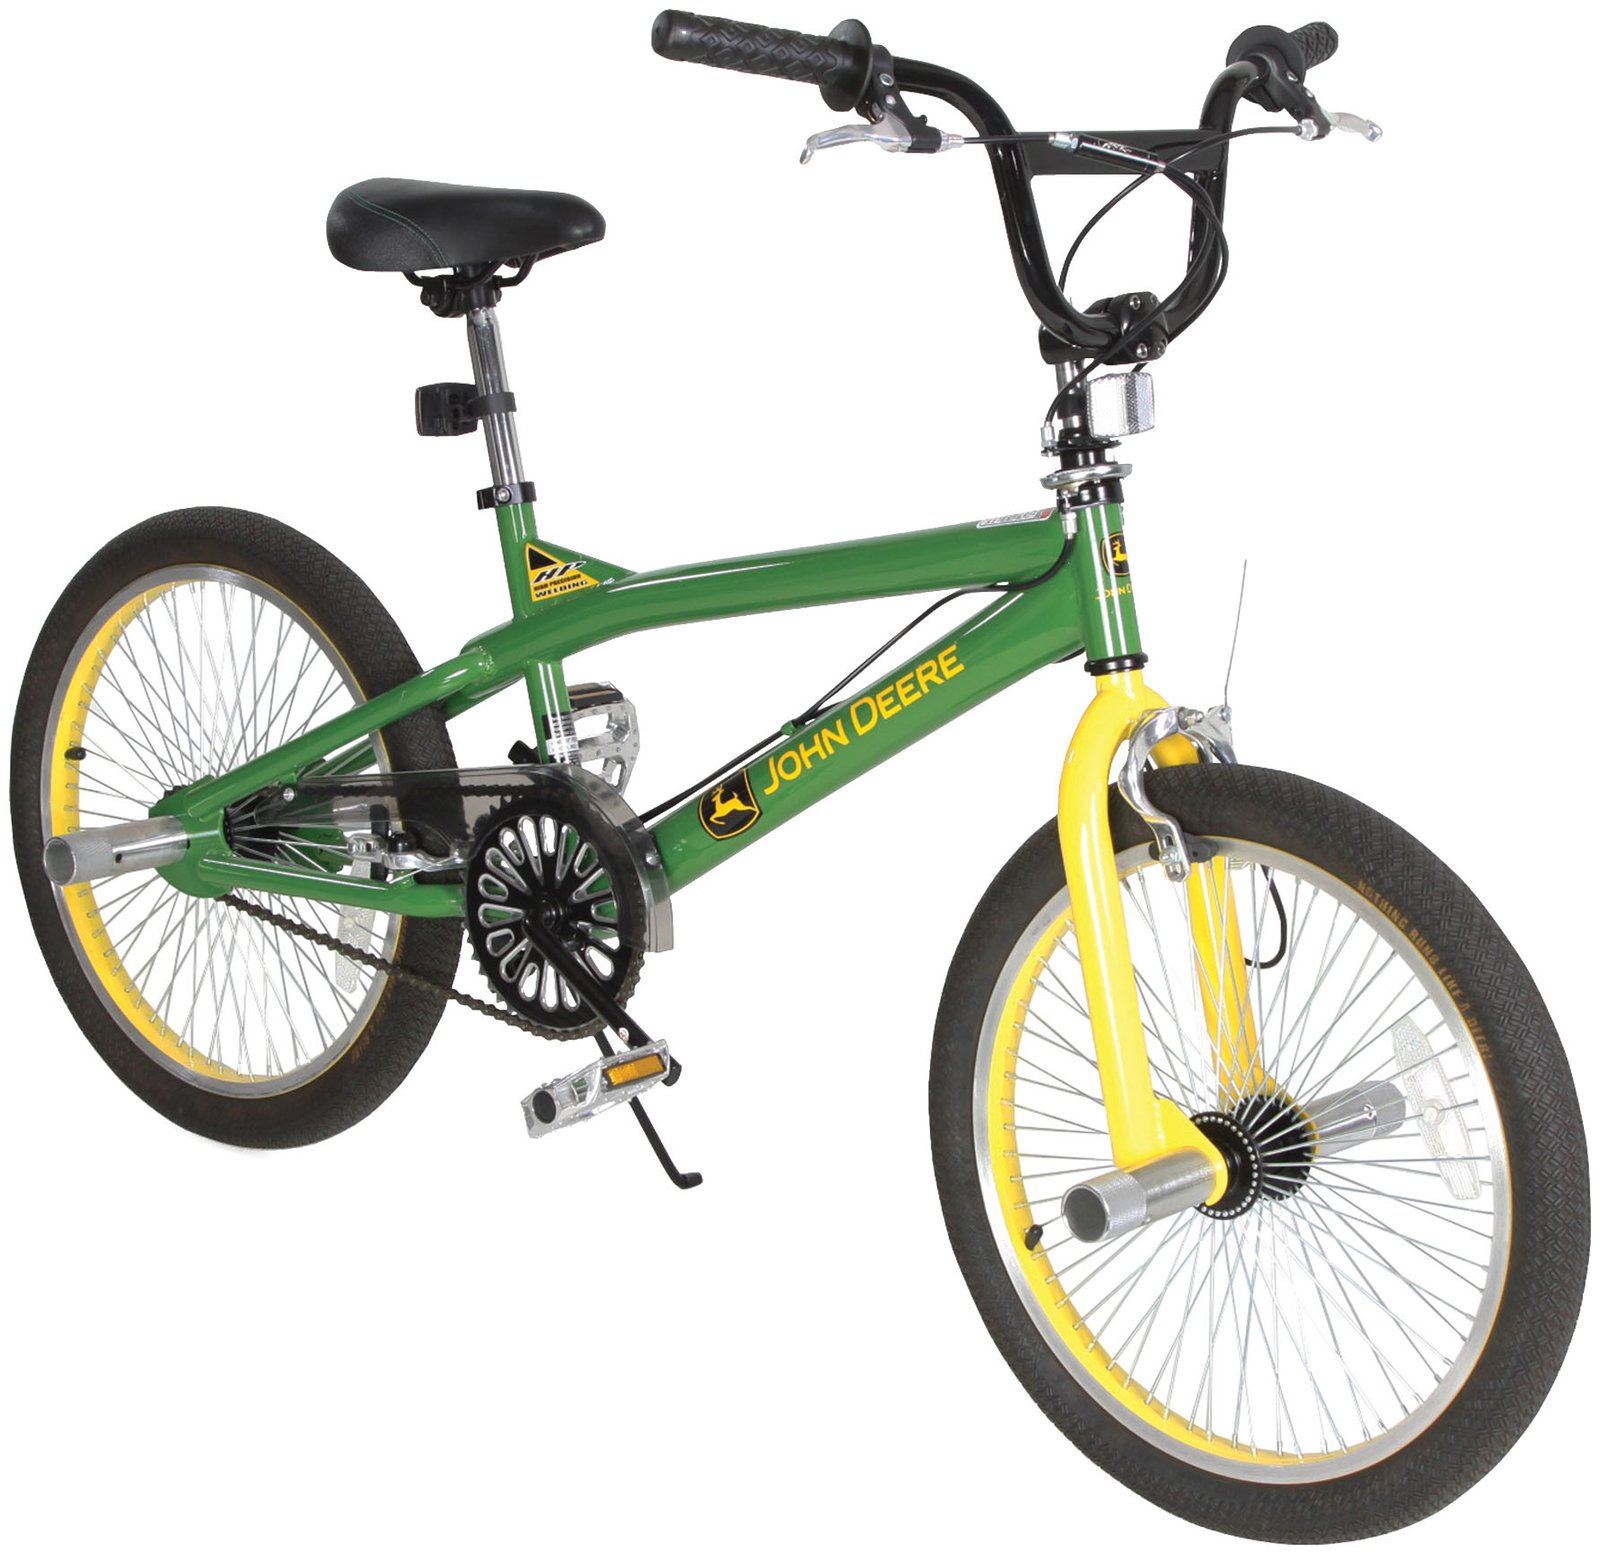 John Deere 20 Boys Bicycle - Free Shipping